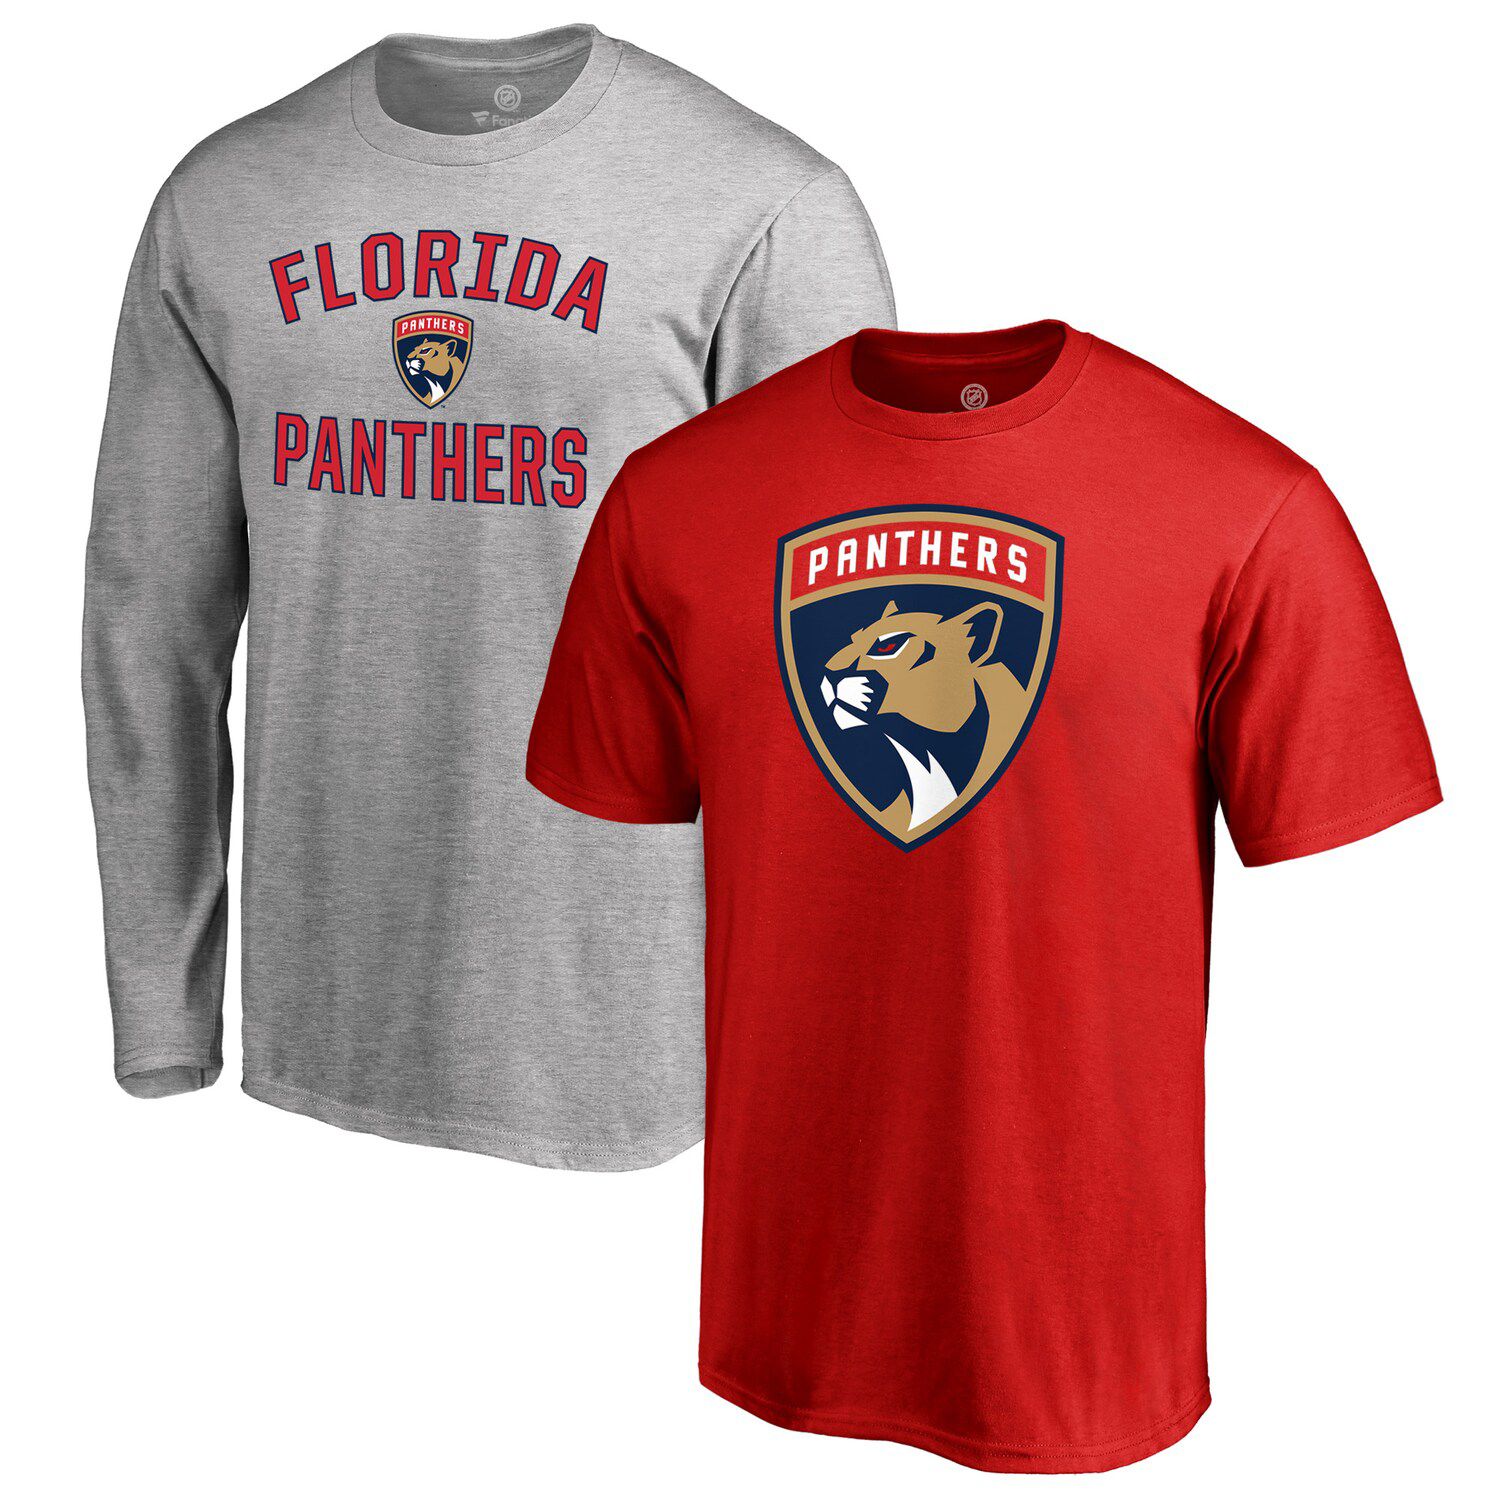 Florida Panthers T-Shirt Combo Set